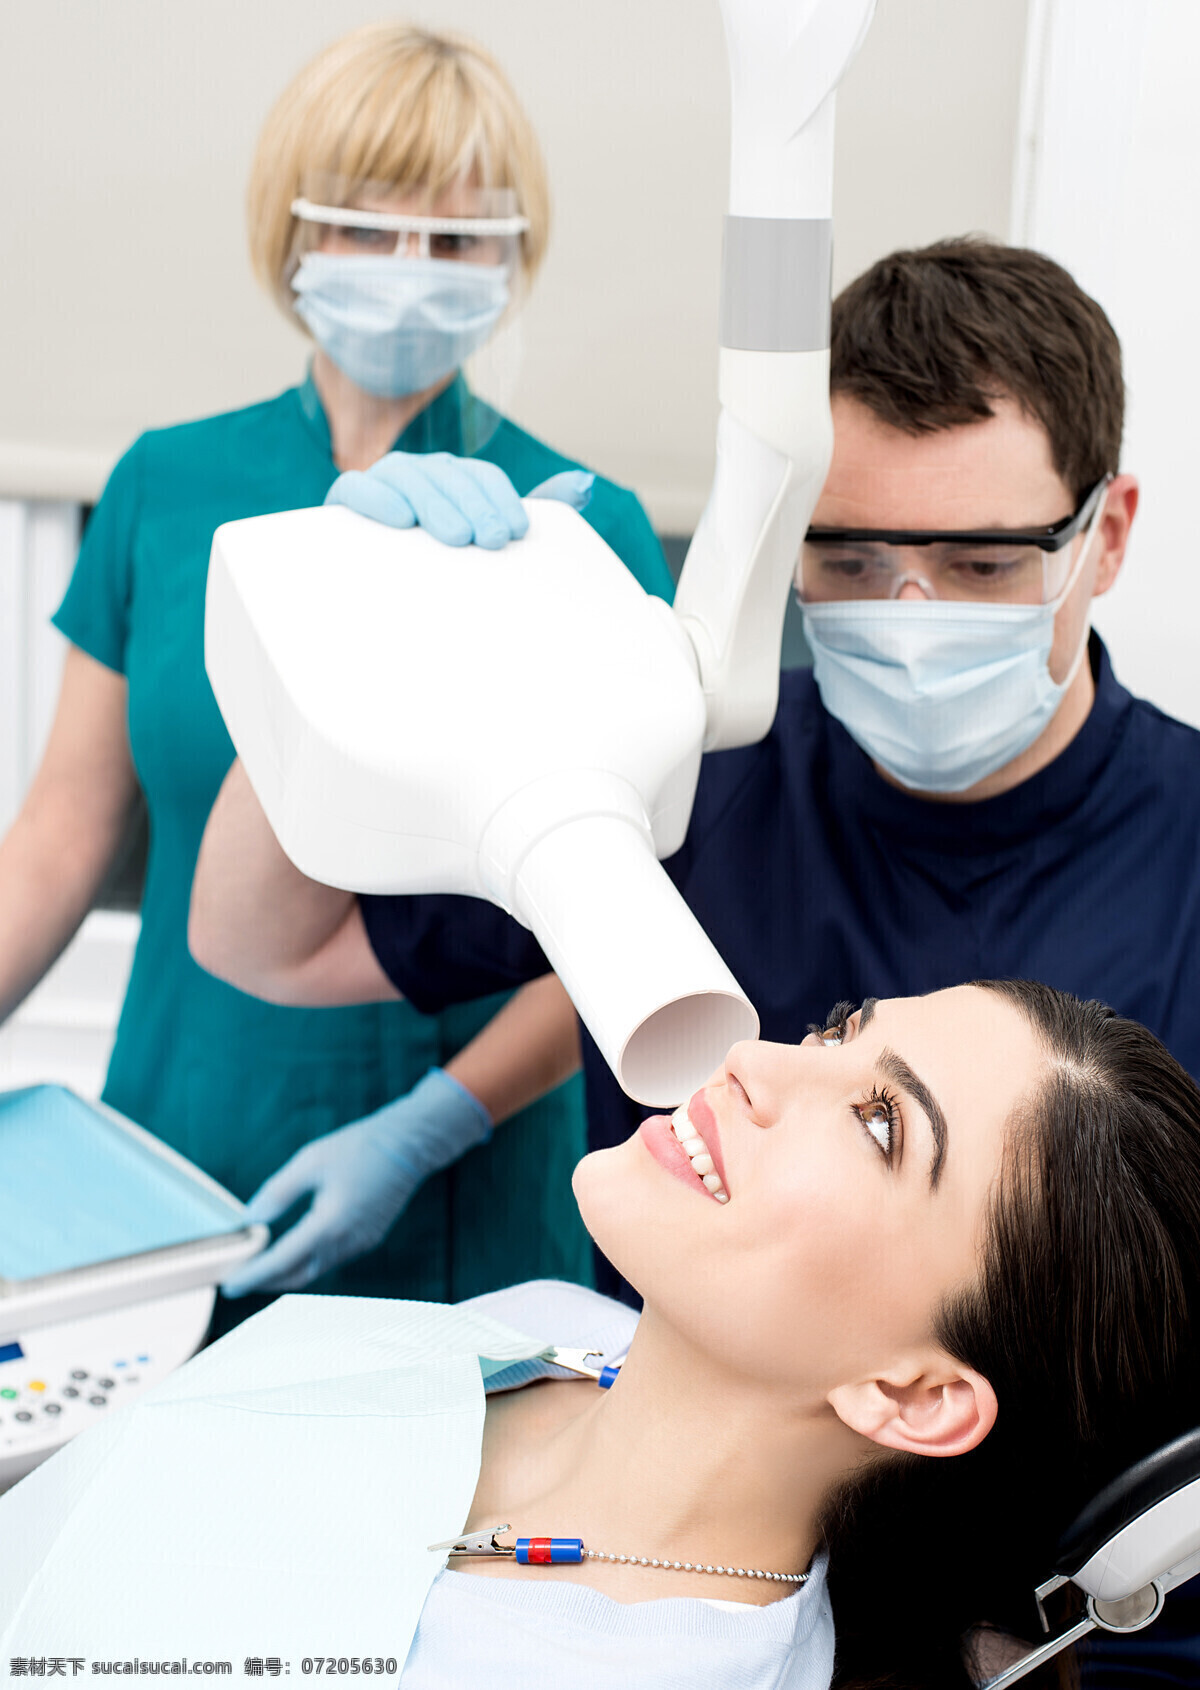 检查 牙齿 外国 美女图片 美女 医疗护理 医疗卫生 外国美女 牙医 牙科器材 医生 职业男女 现代科技